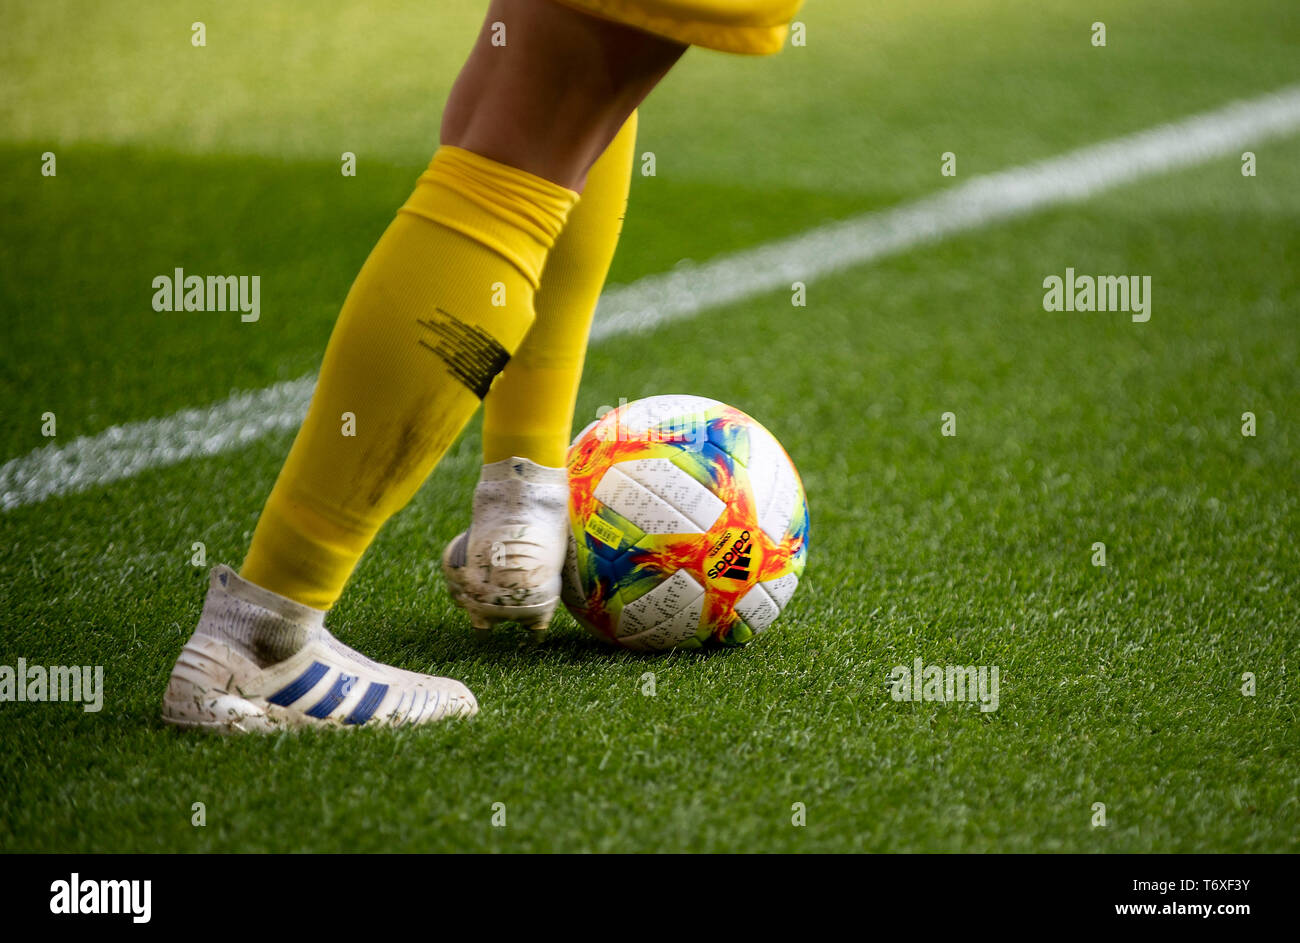 Adidas fußballschuhe -Fotos und -Bildmaterial in hoher Auflösung – Alamy